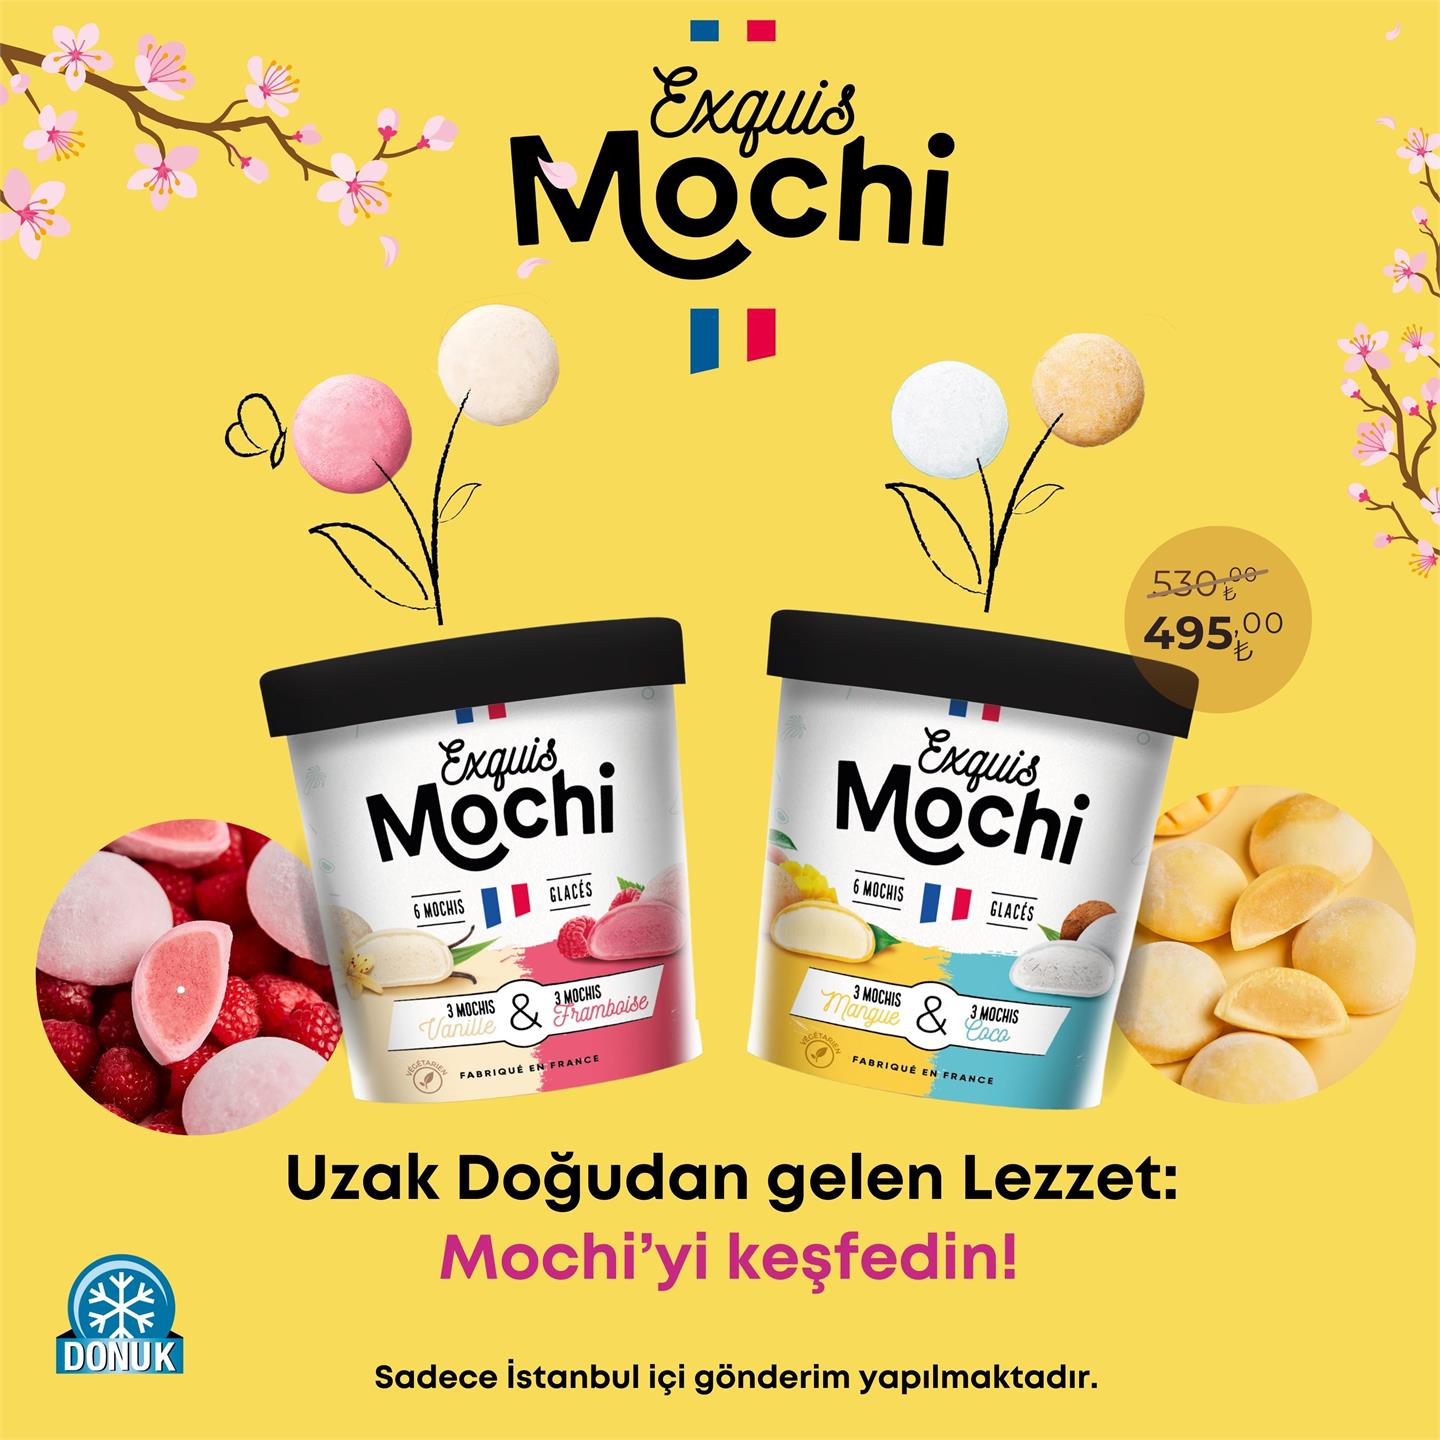 Yeni Ürün Mochi Kampanya